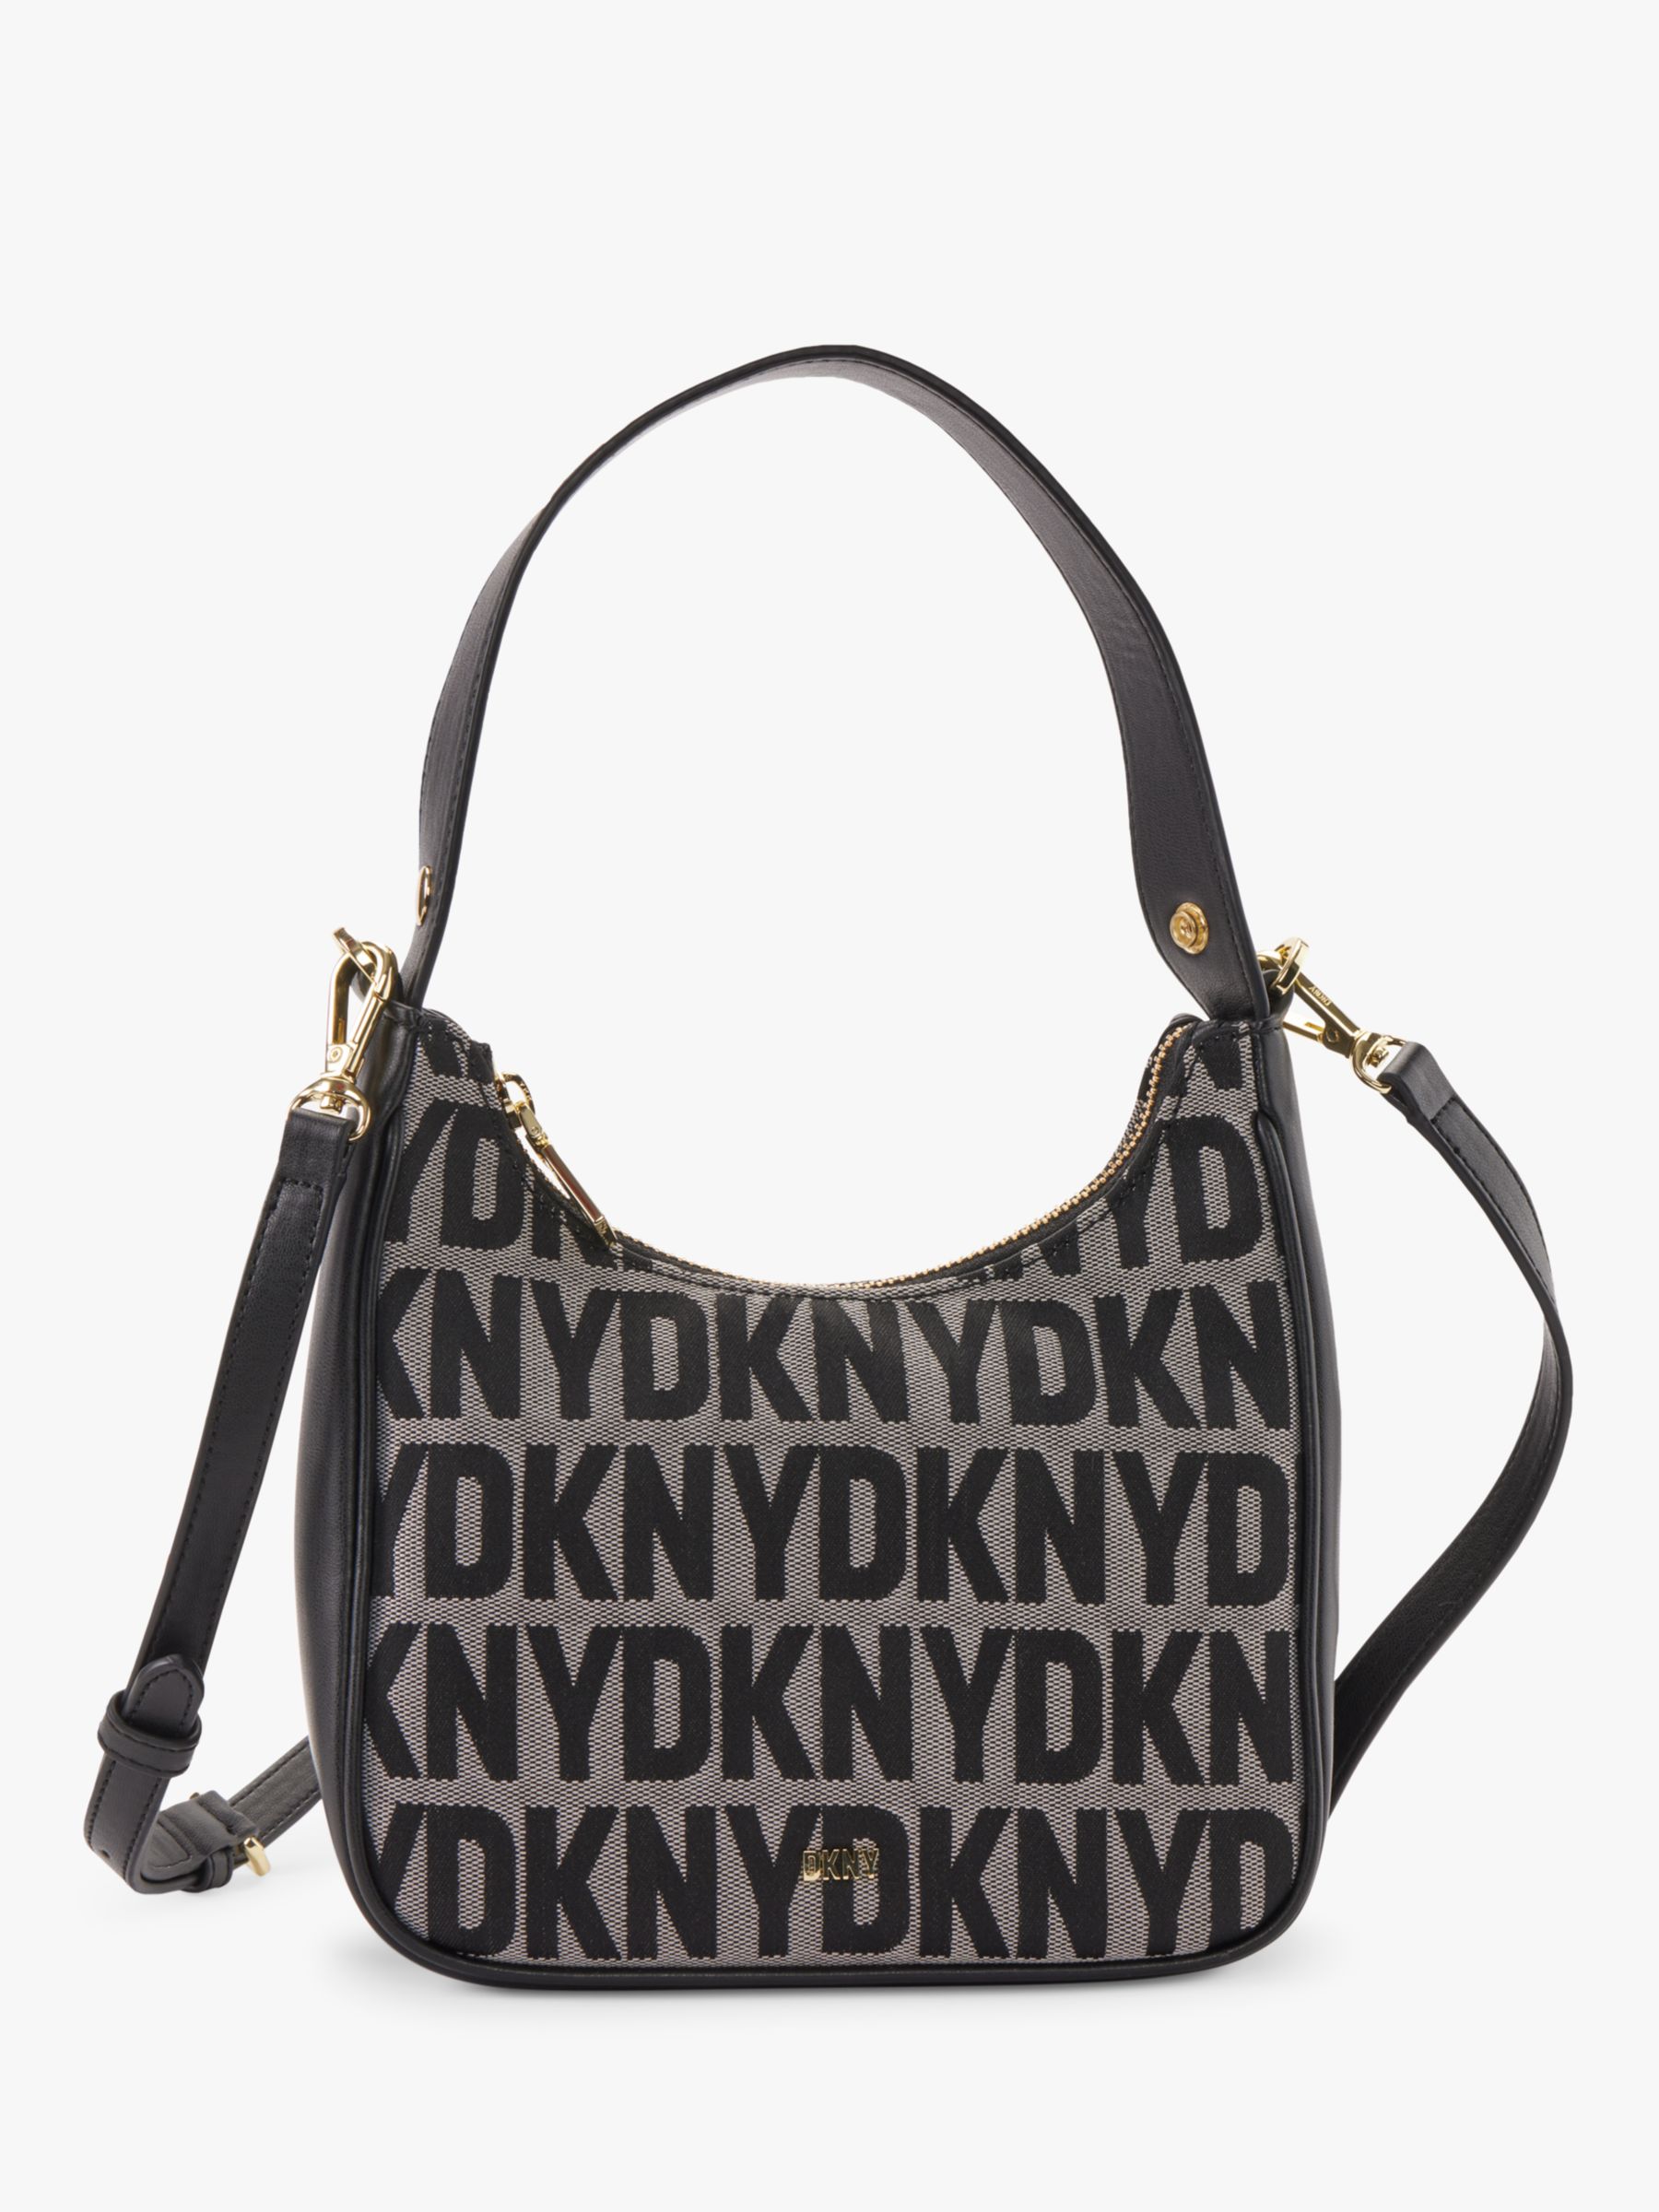 DKNY Elissa Large Leather Shoulder Bag, Black/Gold at John Lewis